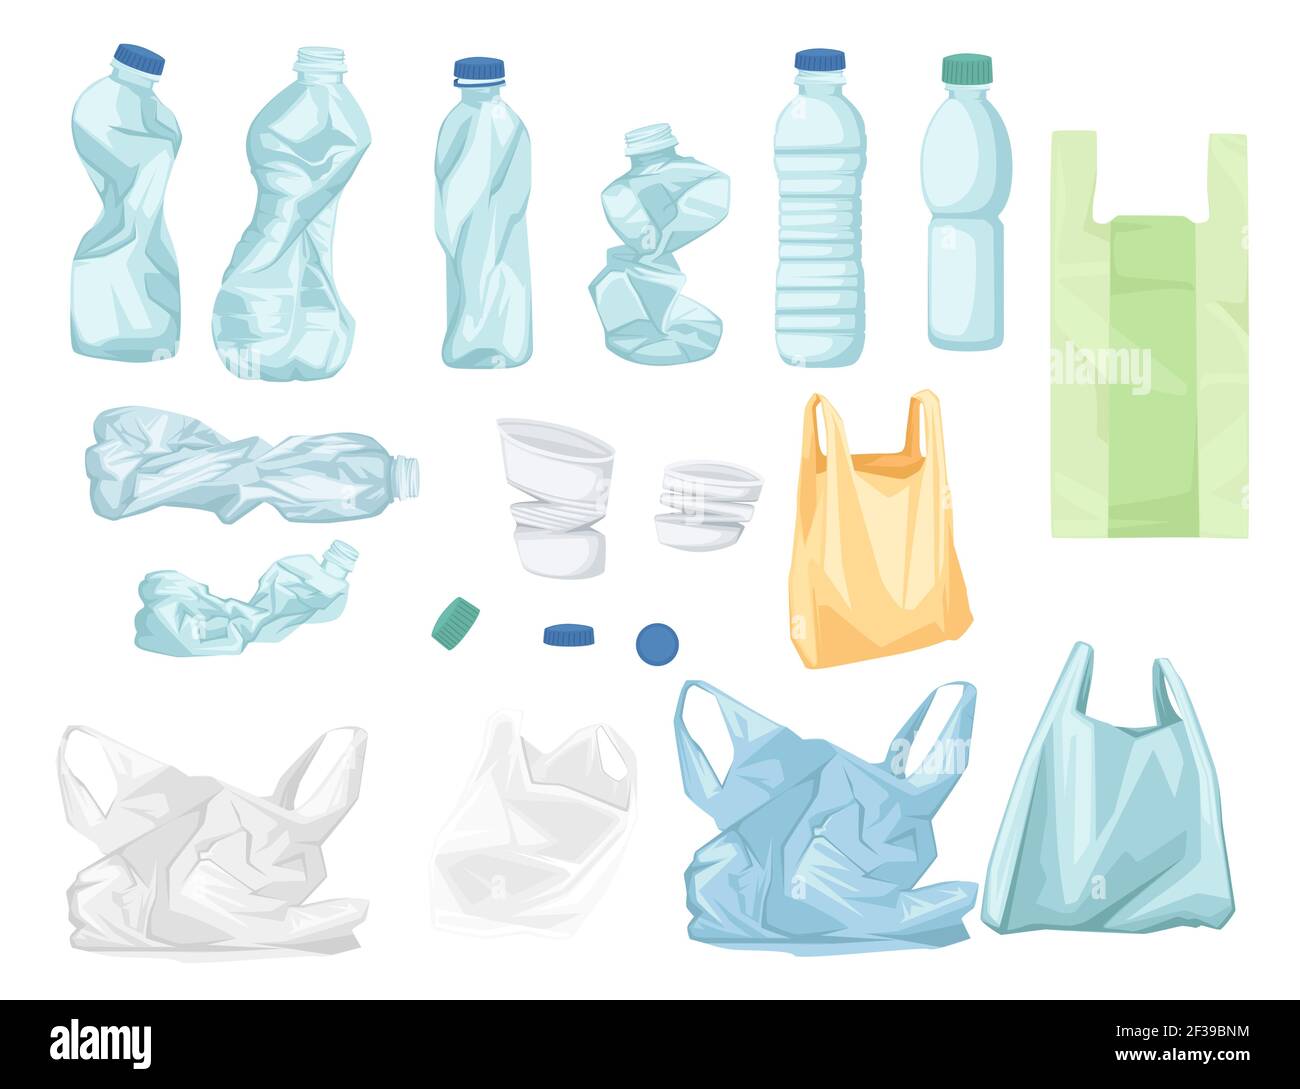 Problème écologique lié au recyclage des sacs et des bouteilles en plastique illustration vectorielle isolée sur fond blanc Illustration de Vecteur